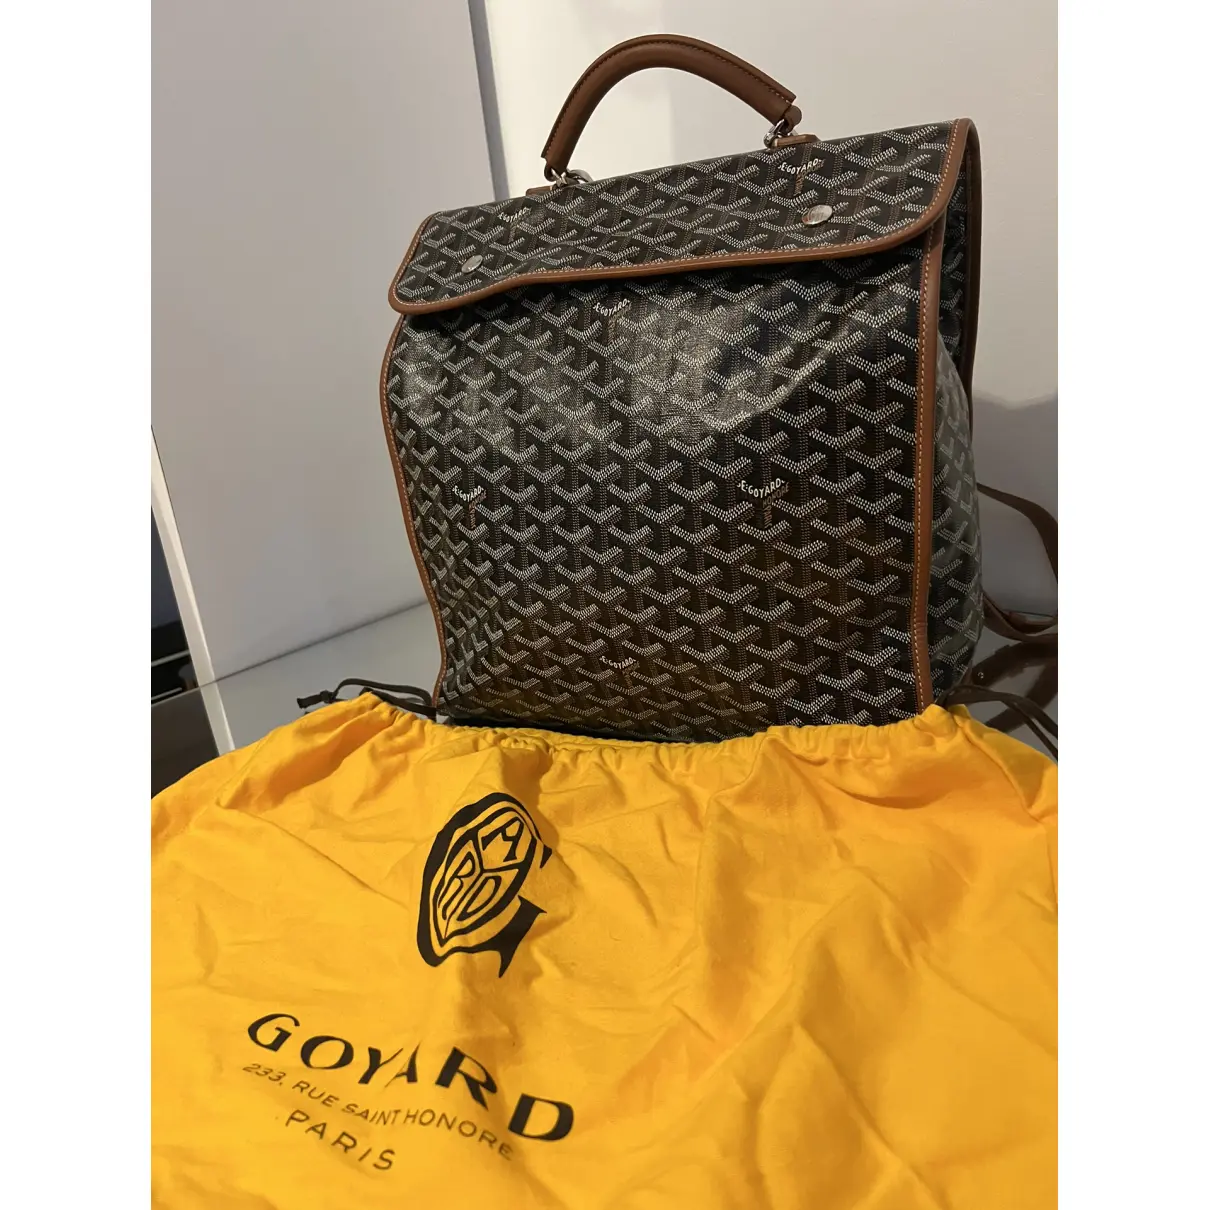 Cloth travel bag Goyard